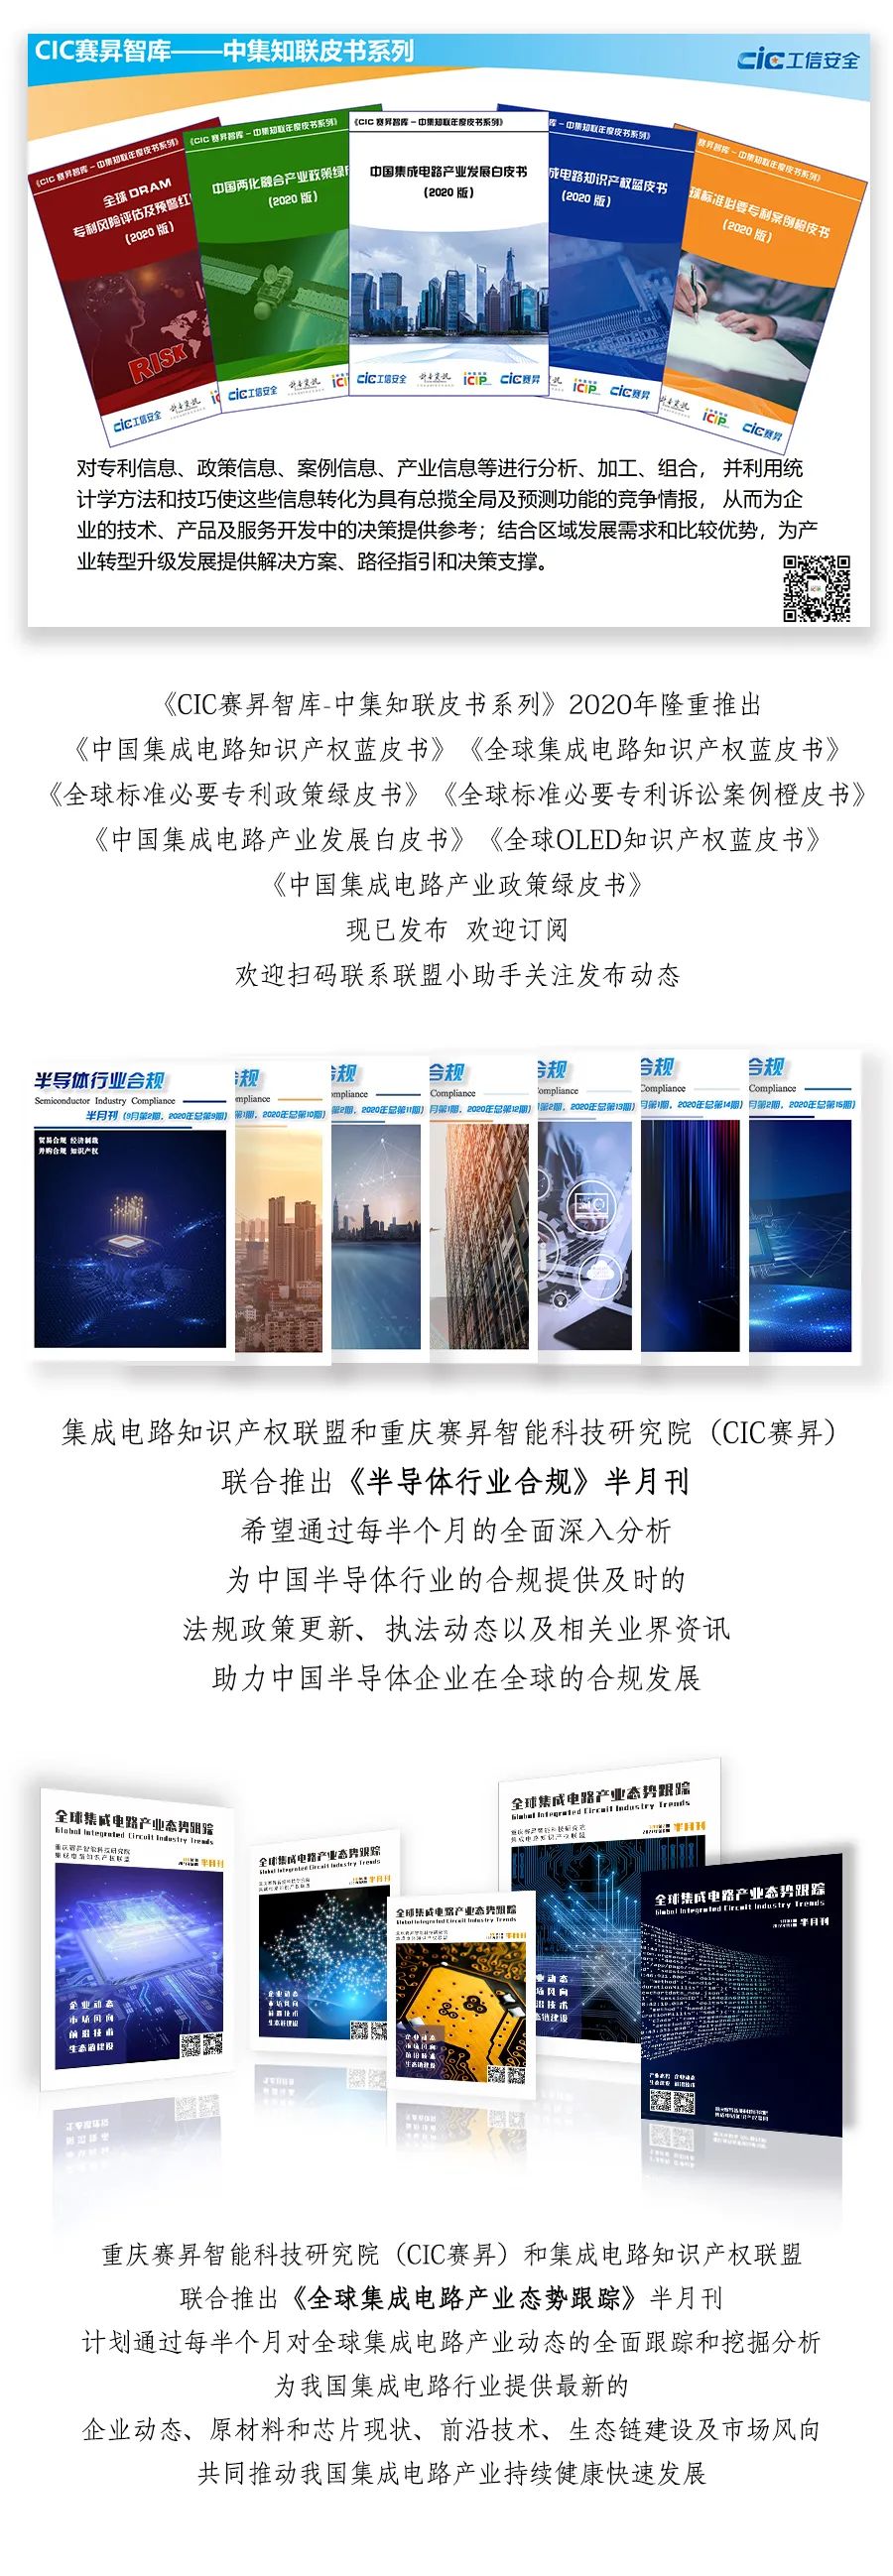 热烈欢迎重庆惠科金渝光电科技有限公司加入联盟